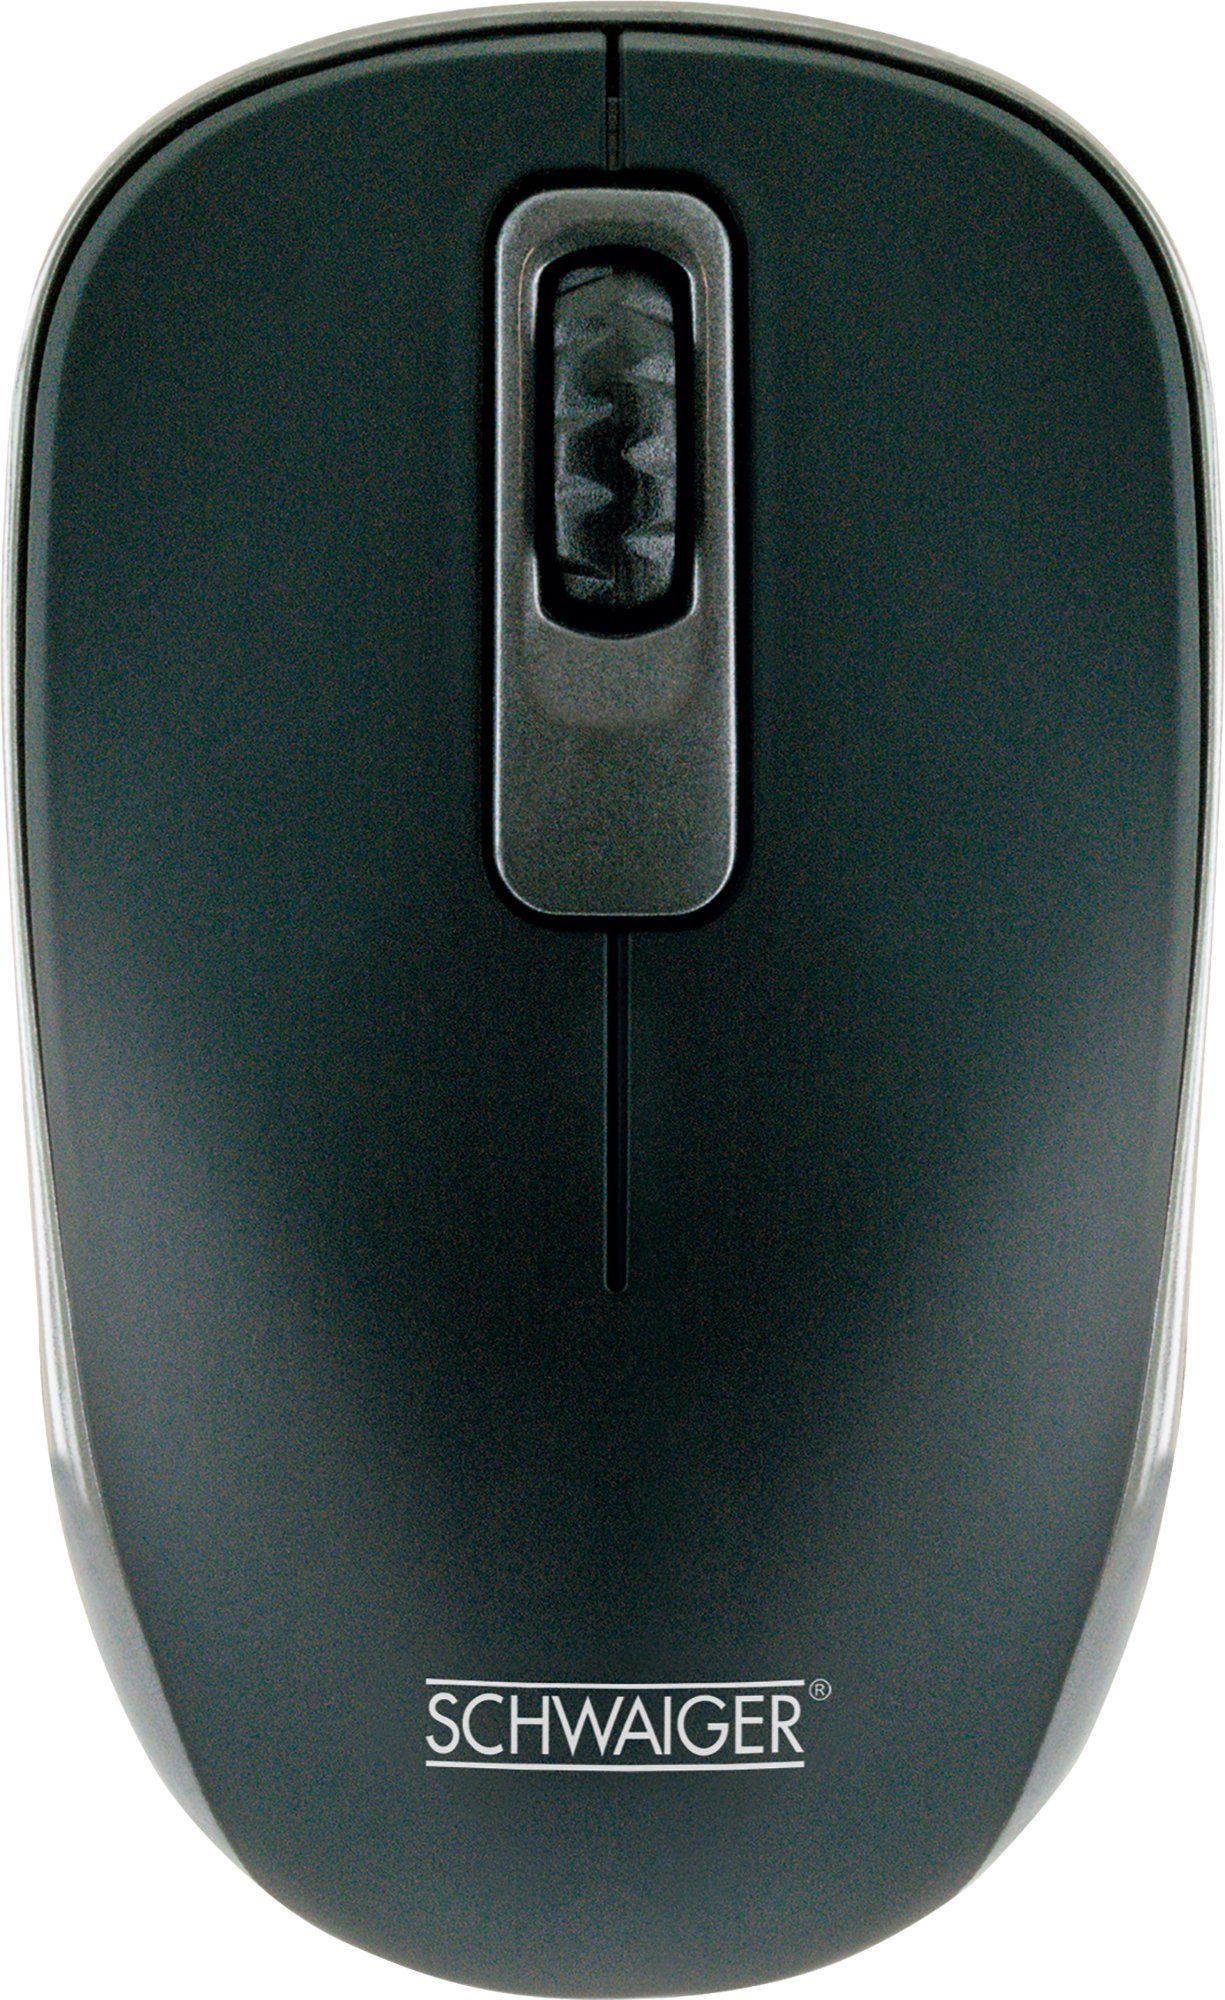 Schwaiger OM1000 013 Mäuse (kabellos, Funk, für Links- und Rechtshänder)